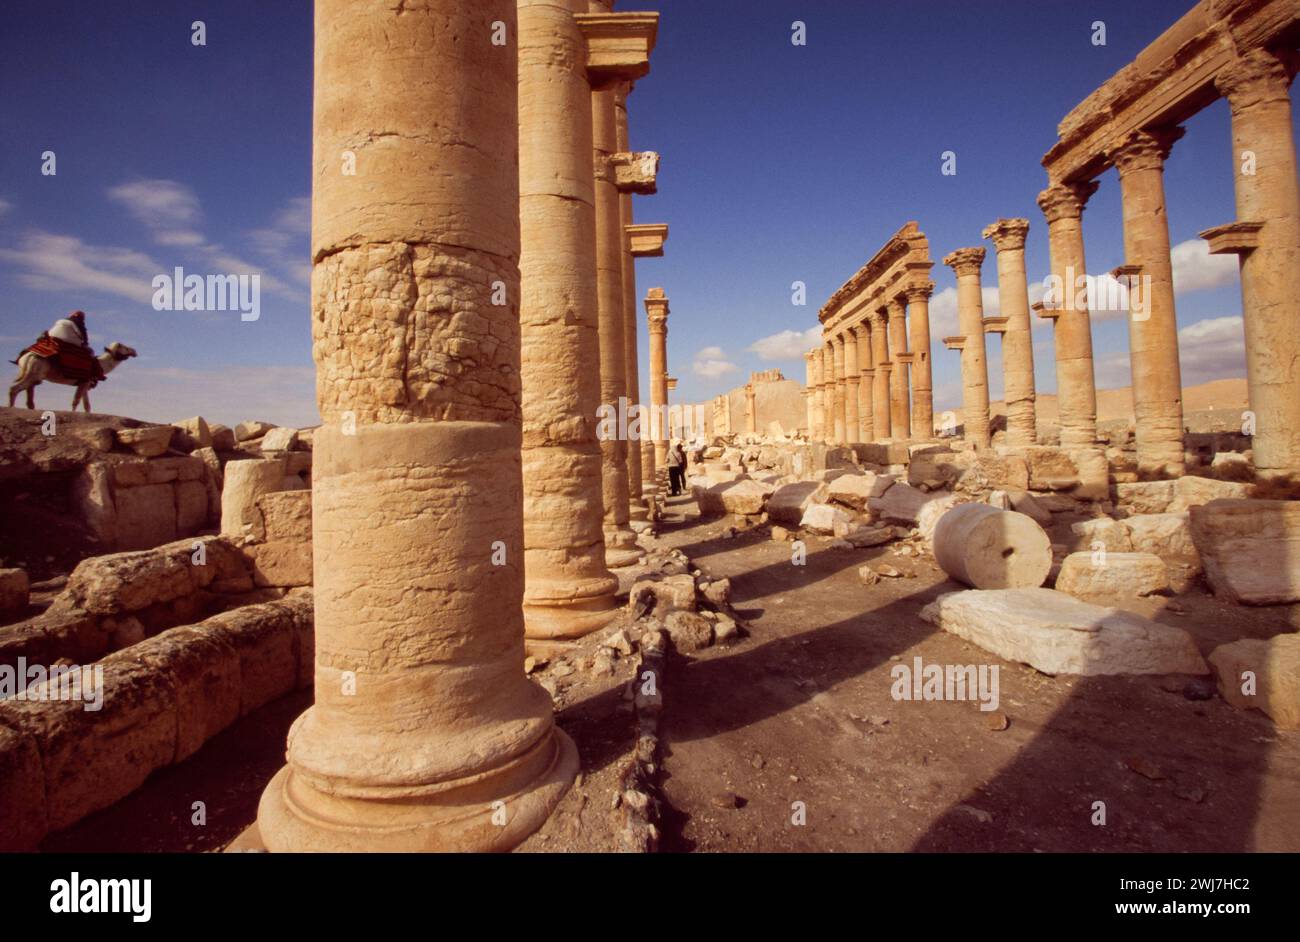 Un'oasi nel deserto siriano, a nord-est di Damasco, Palmira contiene le rovine monumentali di una grande città. Siria Foto Stock